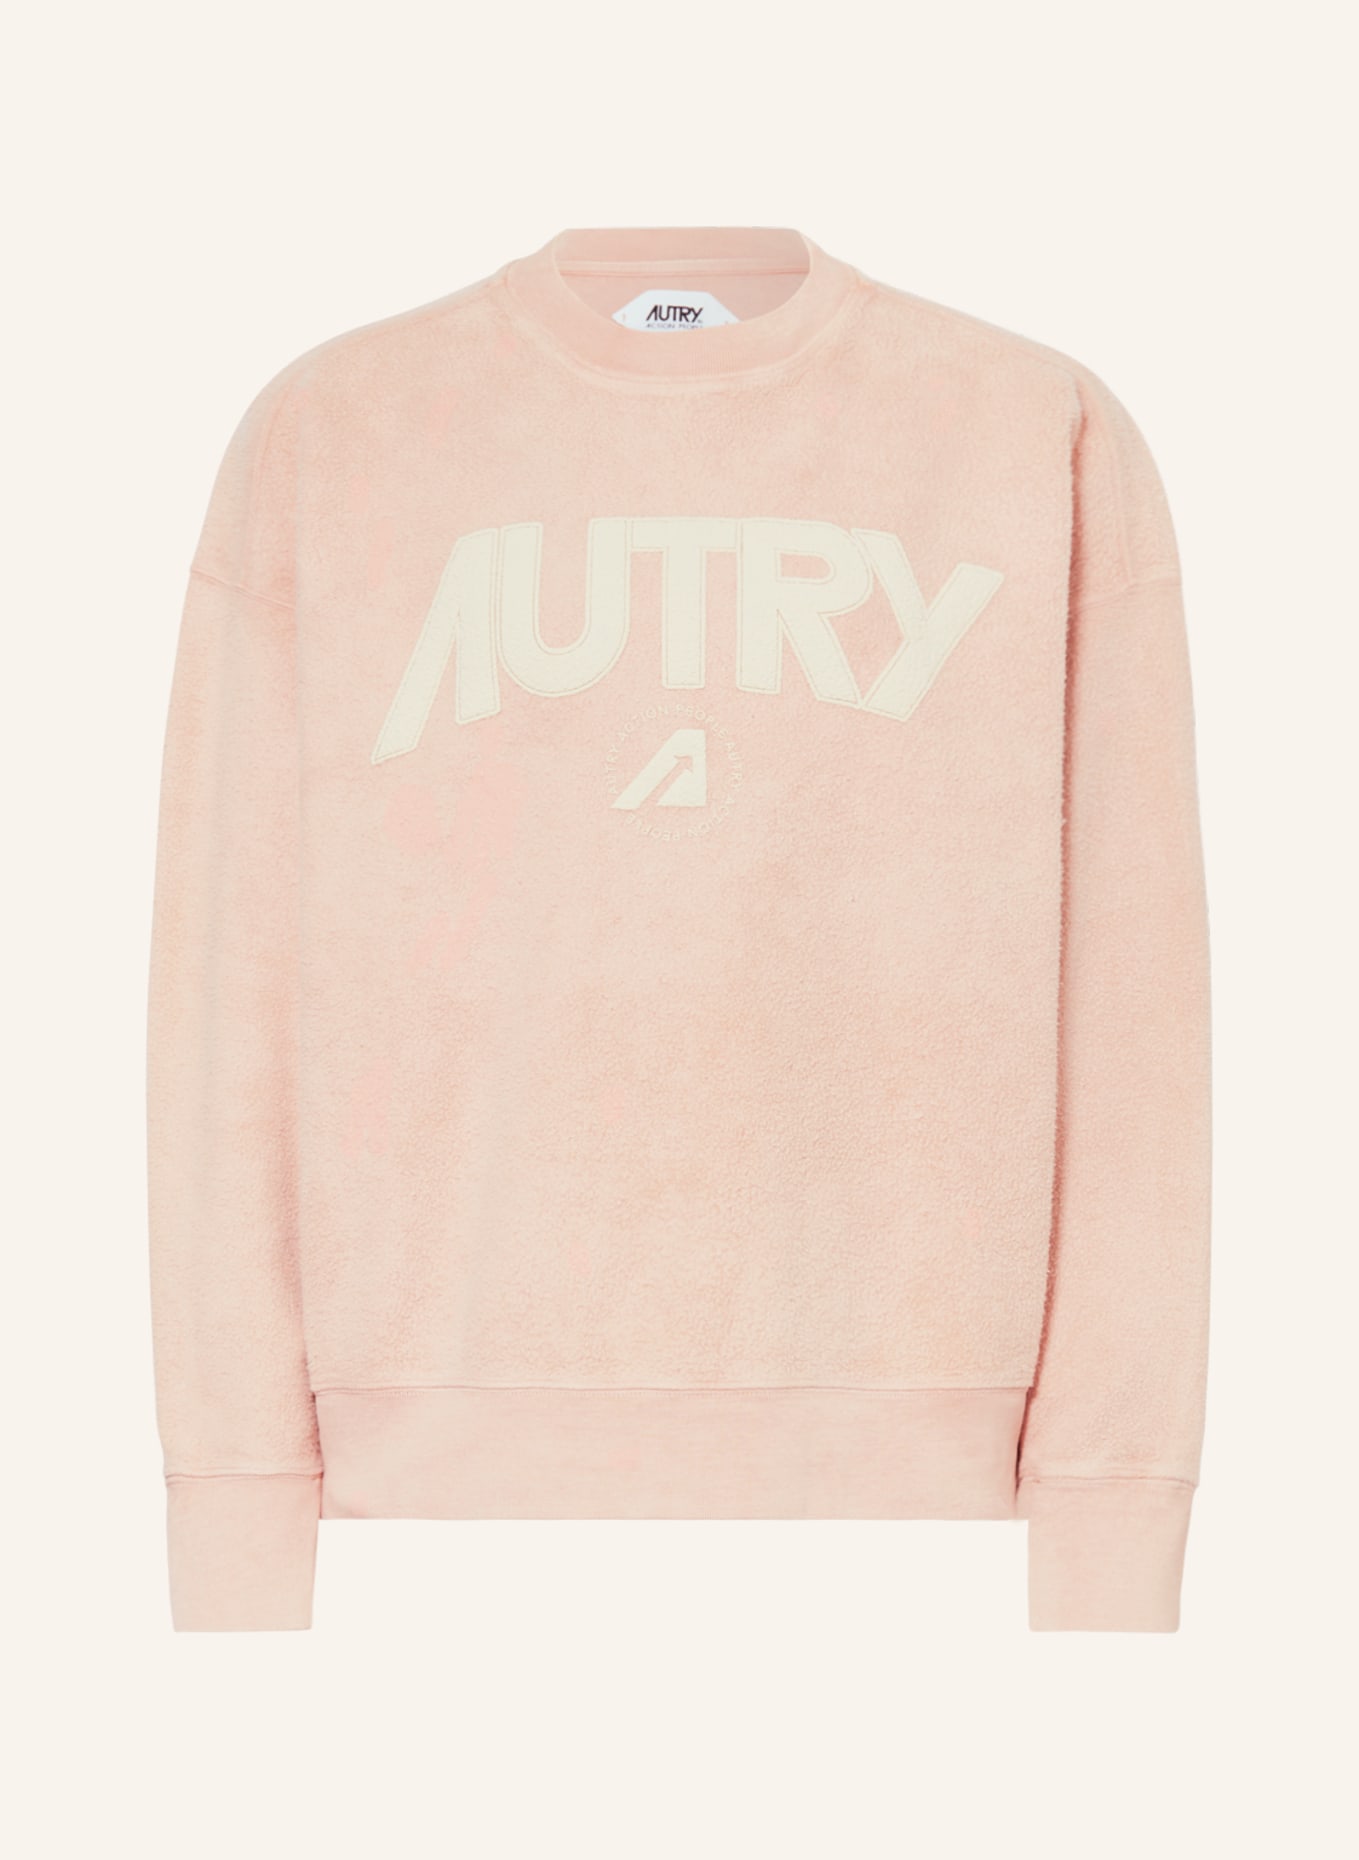 AUTRY Sweatshirt, Color: ROSE (Image 1)